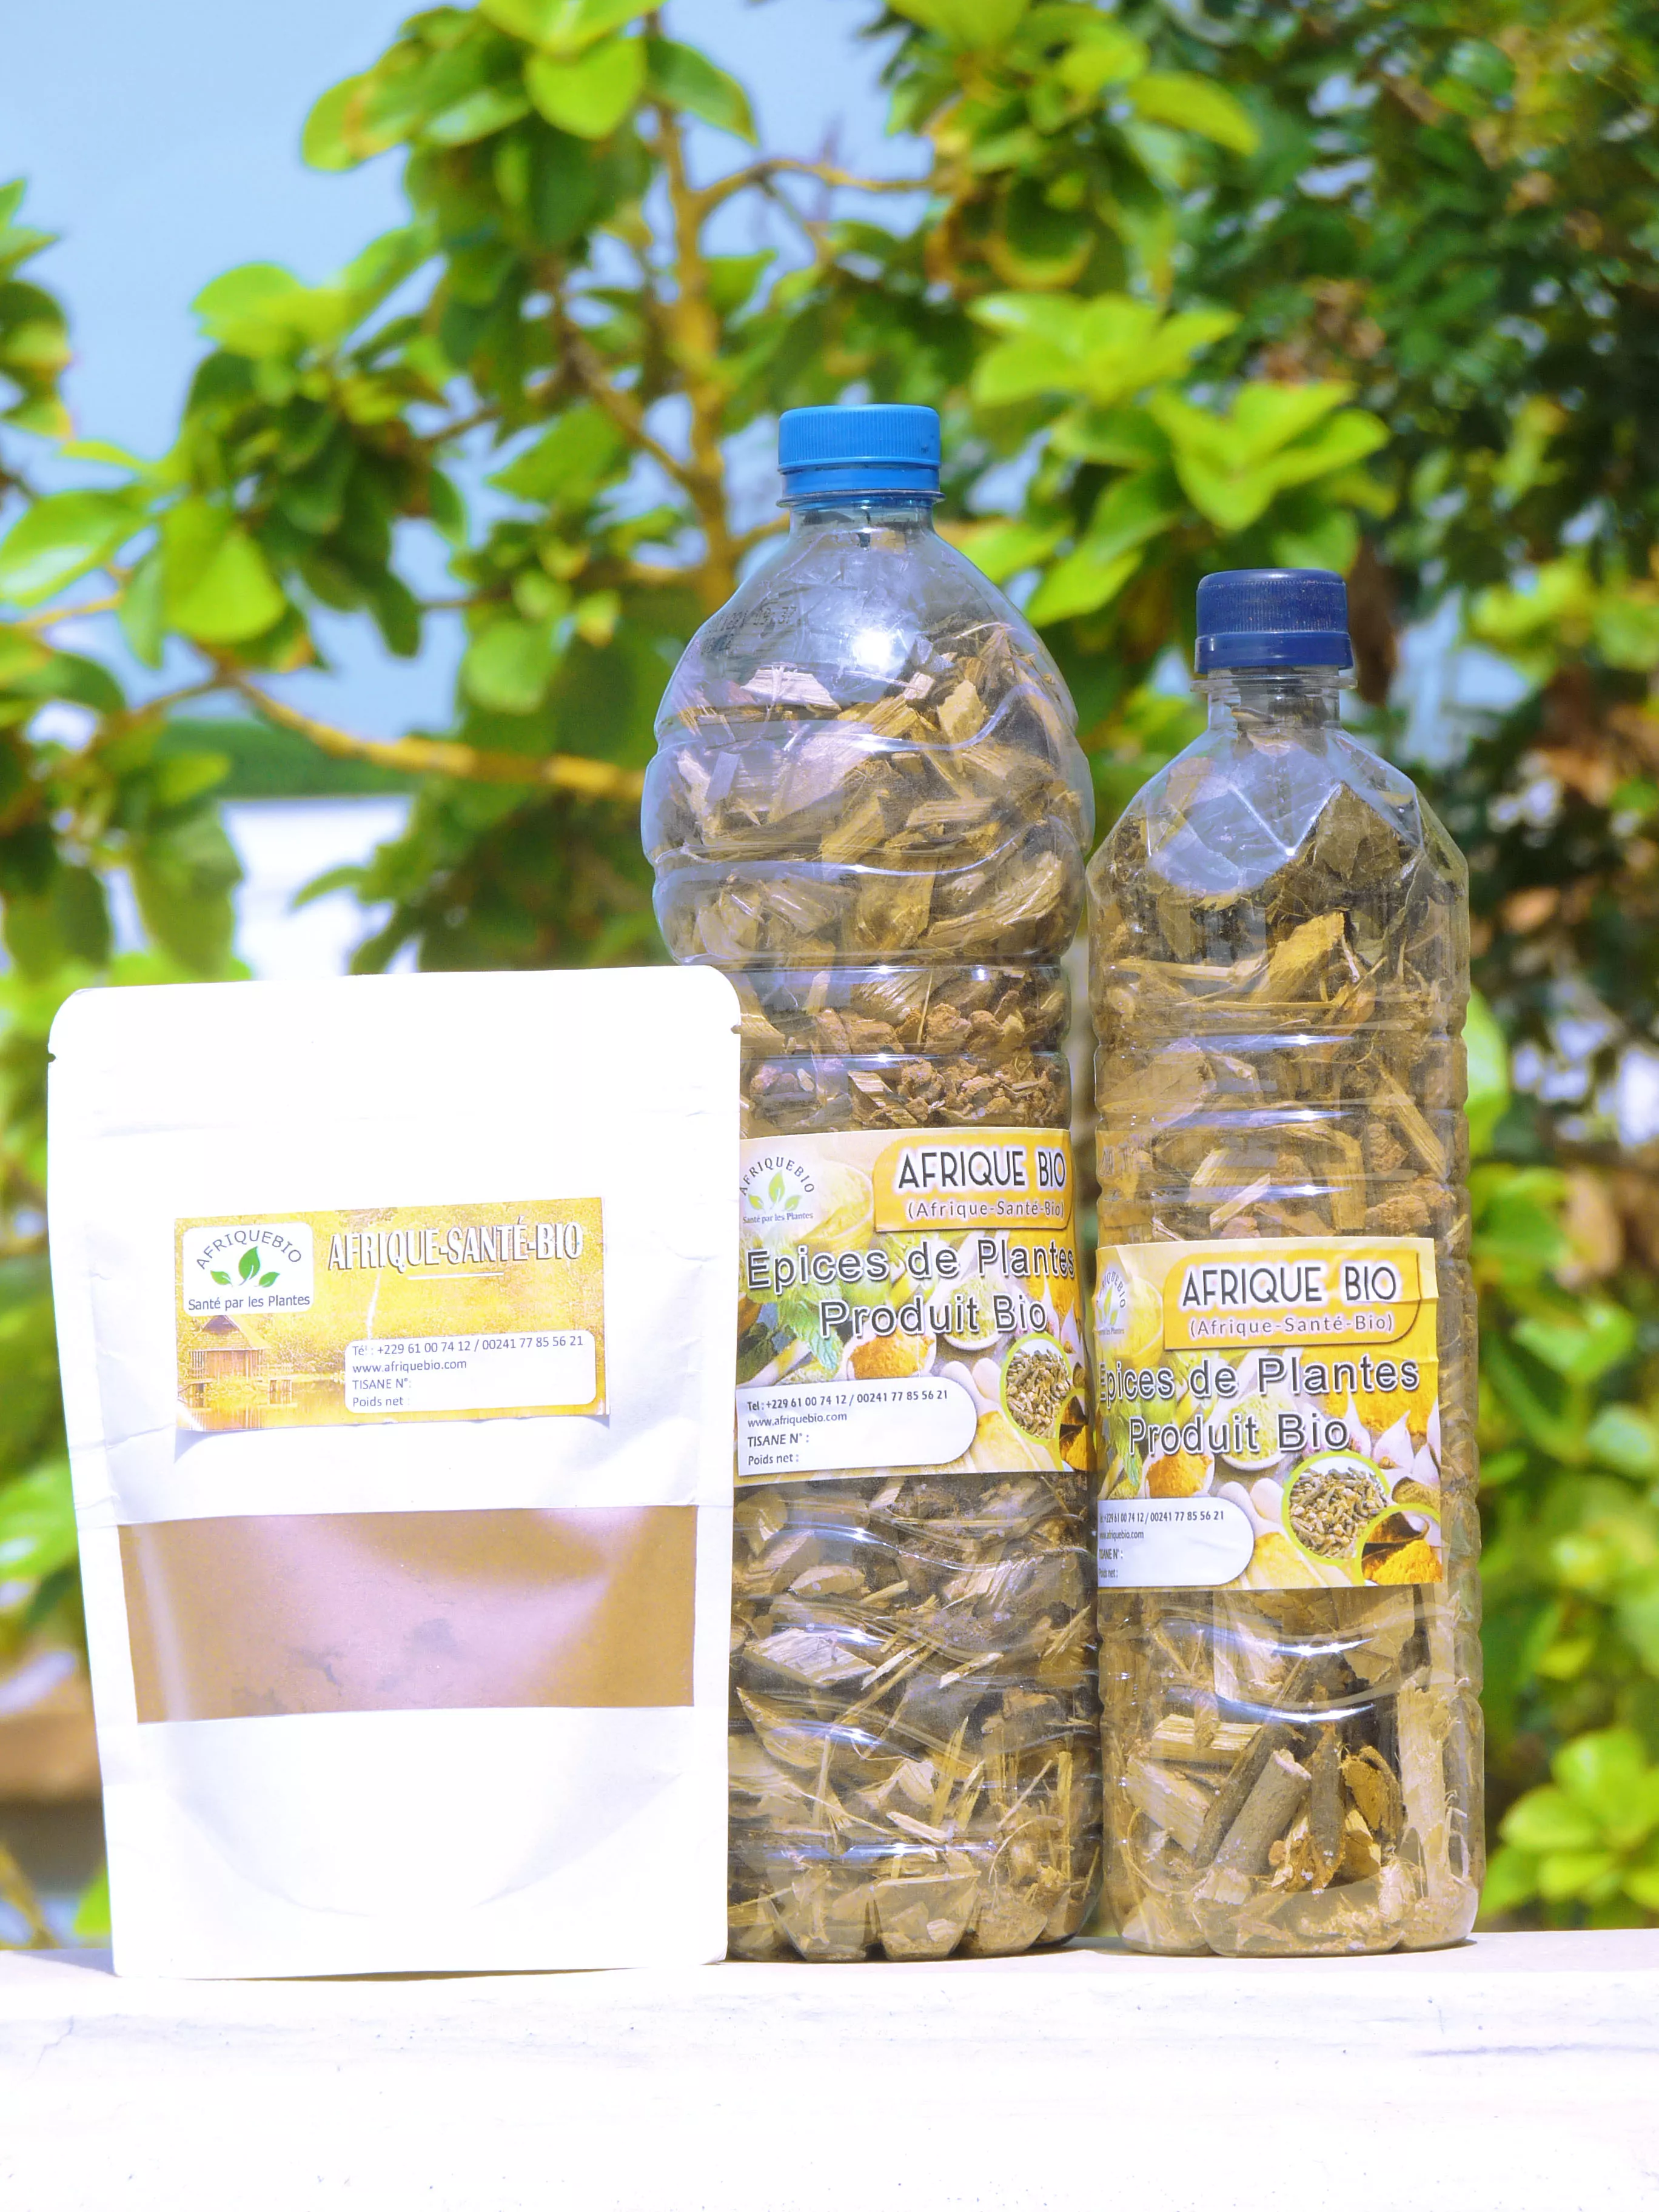 Traitement naturel pour soigner l'hépatite b. à 75000 - Petites annonces gratuites - Achat et vente à Cotonou, Bénin